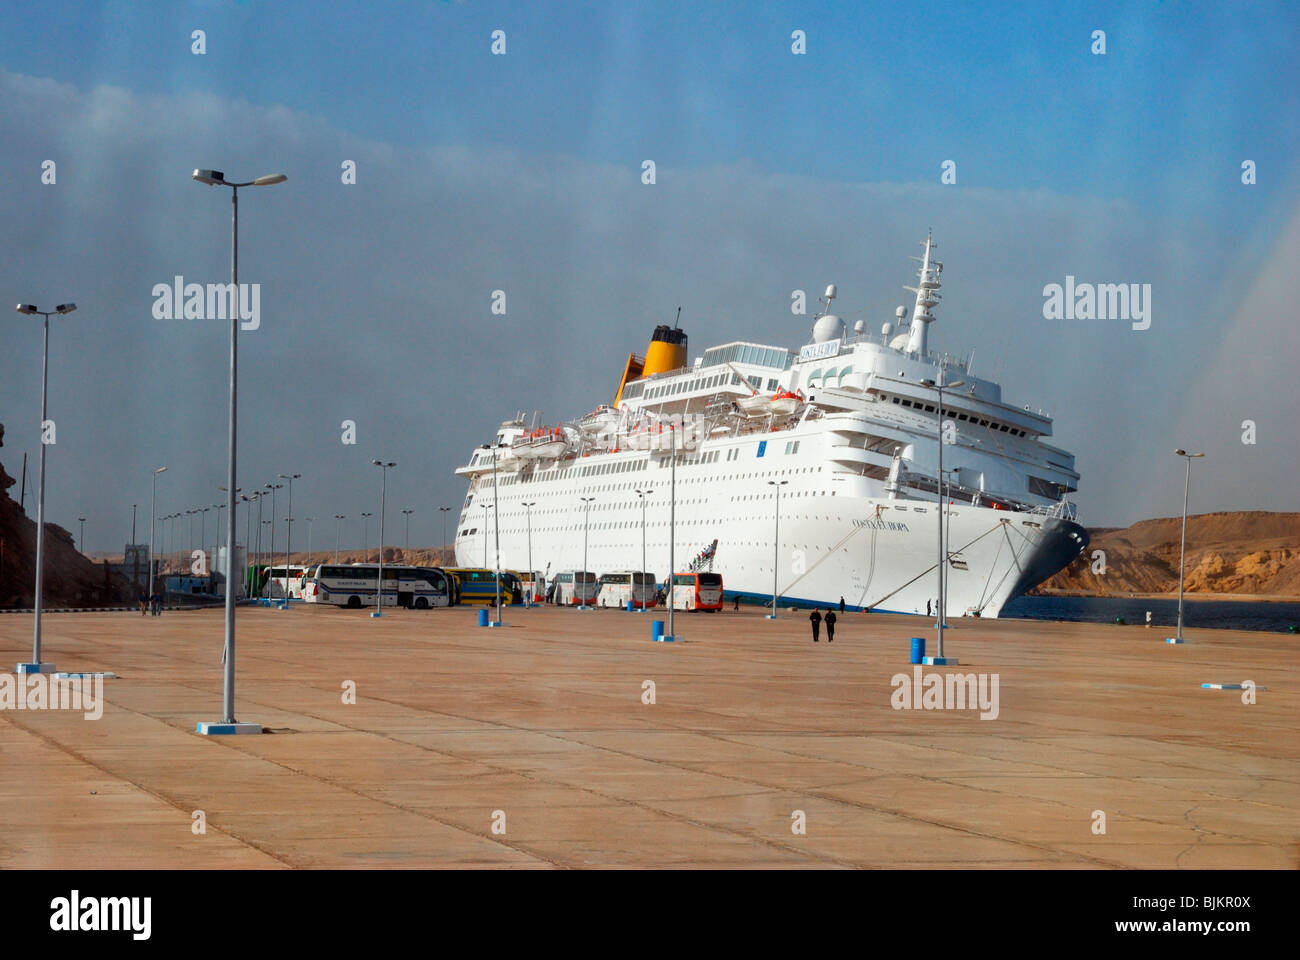 Inserat COSTA EUROPA Kreuzfahrtschiff nach einem Sturz in der Kai, Pier von Sharm el Sheikh am 26. Februar 2010, Ägypten, Afrika Stockfoto